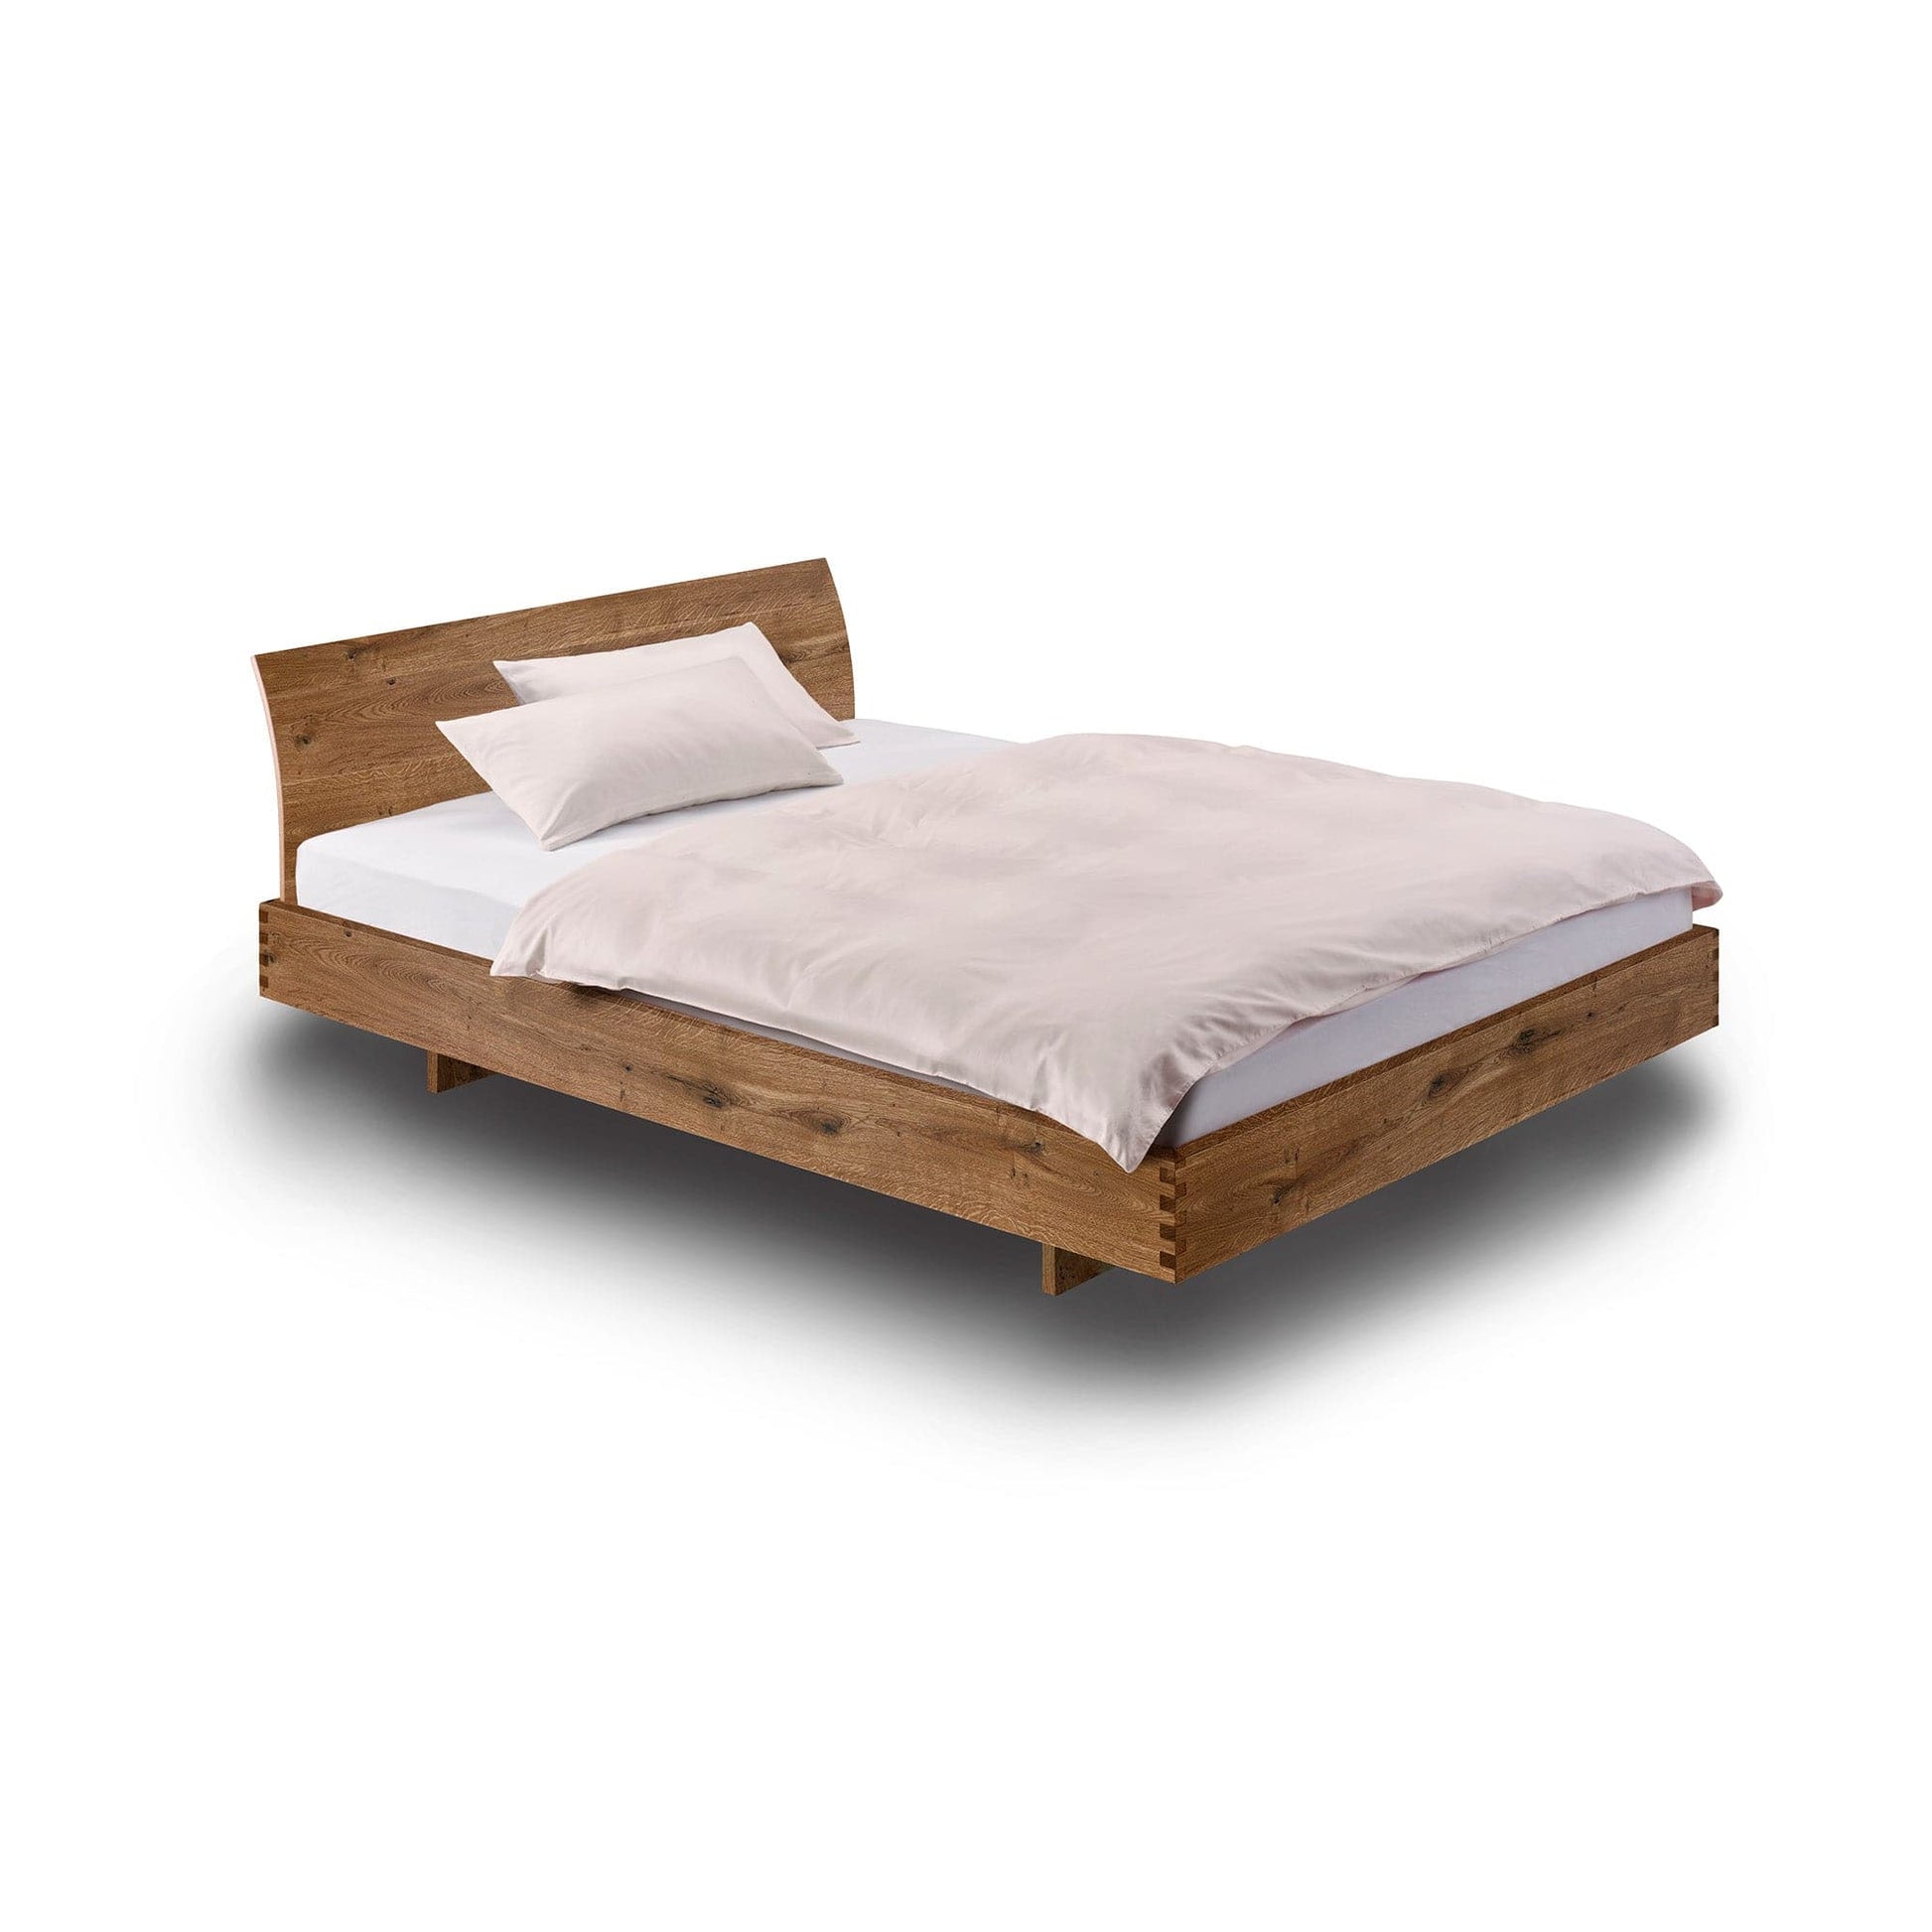 Ökolpgische Betten. Hochwertige und handwerkliche Betten aus unserer Massivholzmöbel Produktion